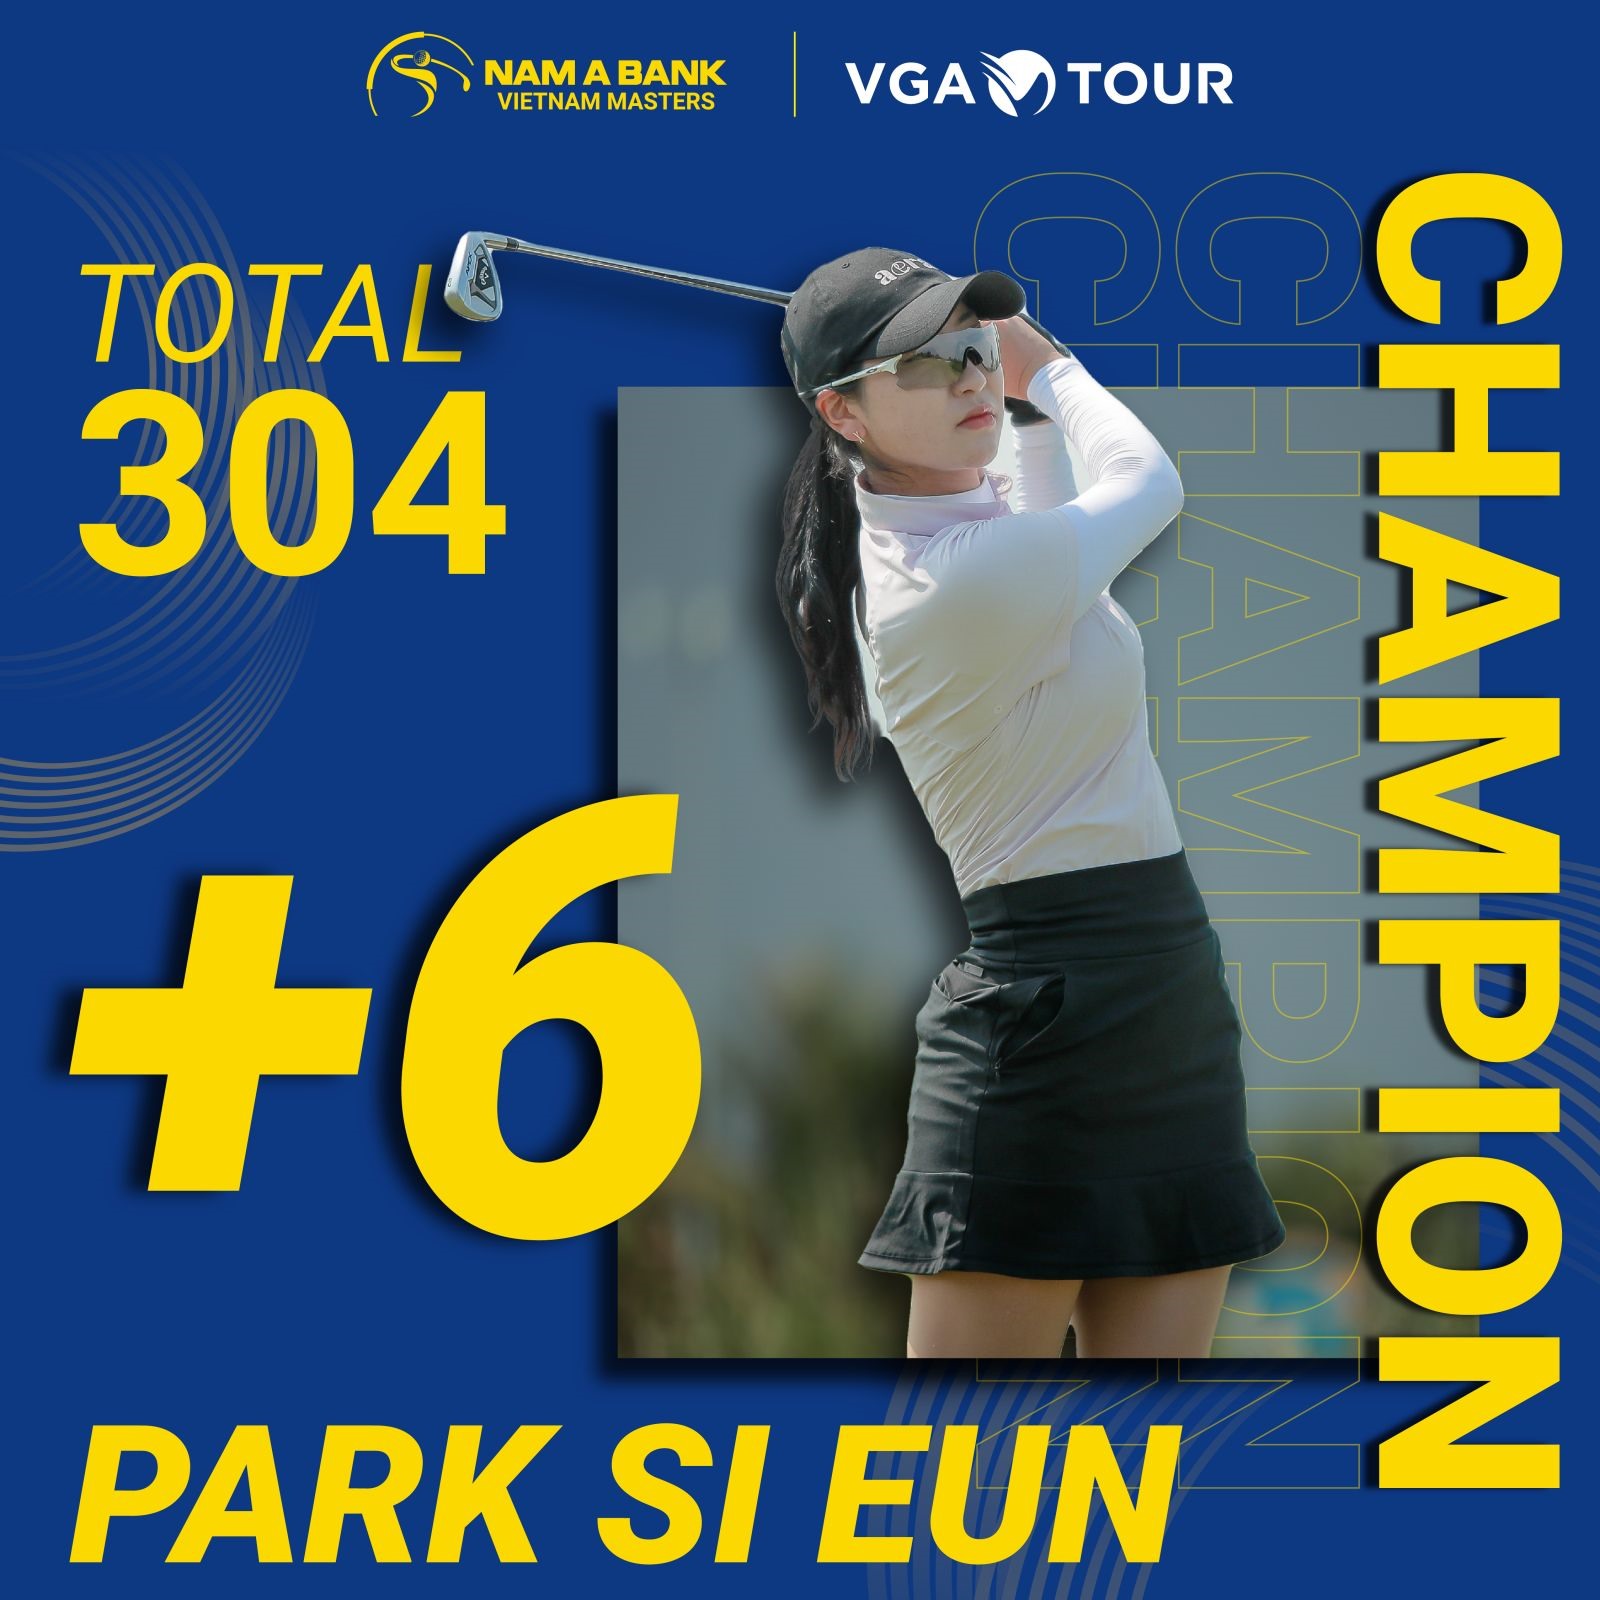 Park Si Eun vô địch giải nữ. Ảnh: VGA Tour